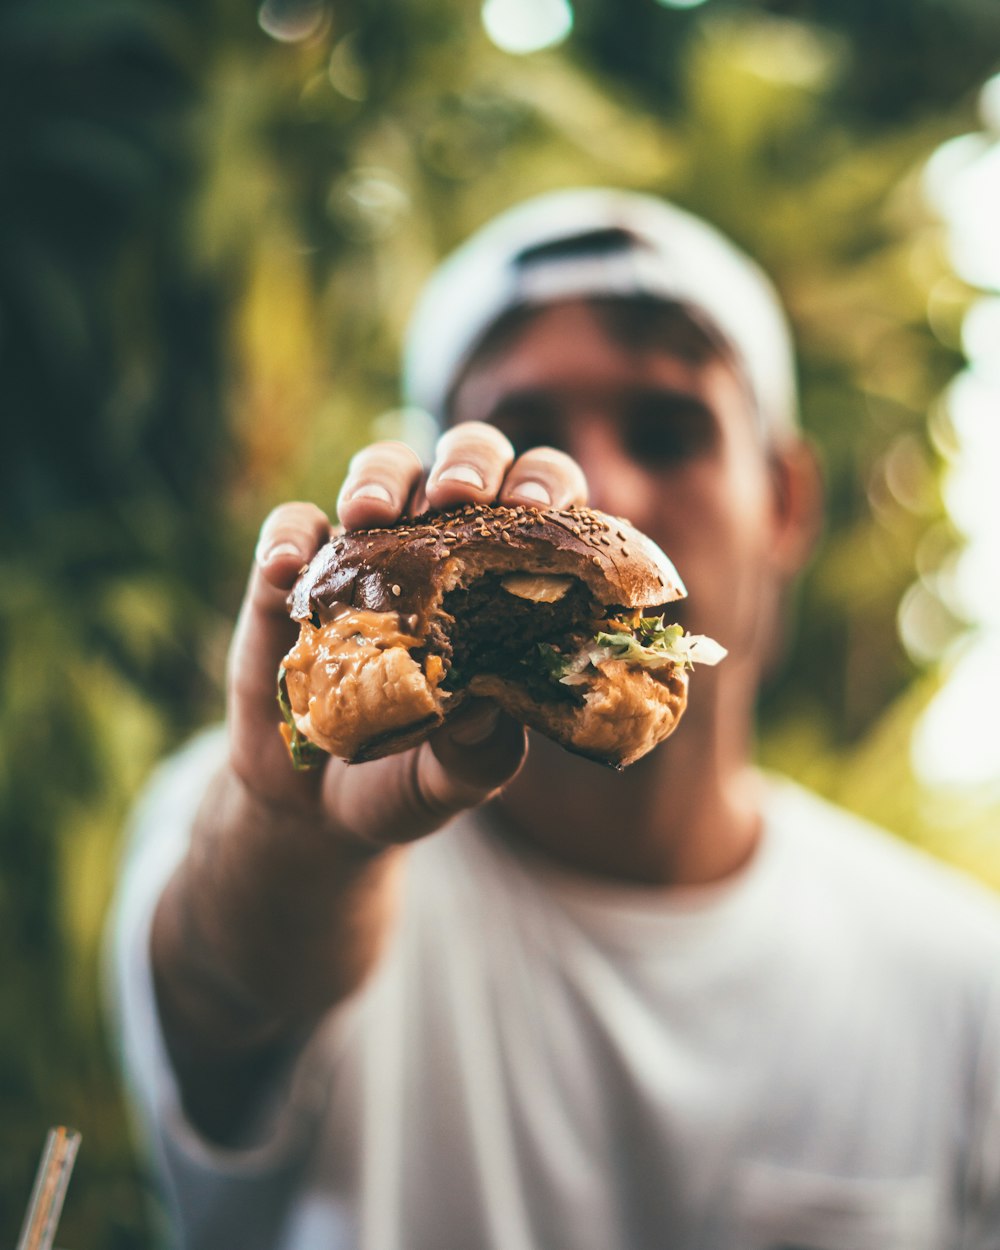 먹은 햄버거를 들고 있는 남자의 선택적 초점 사진